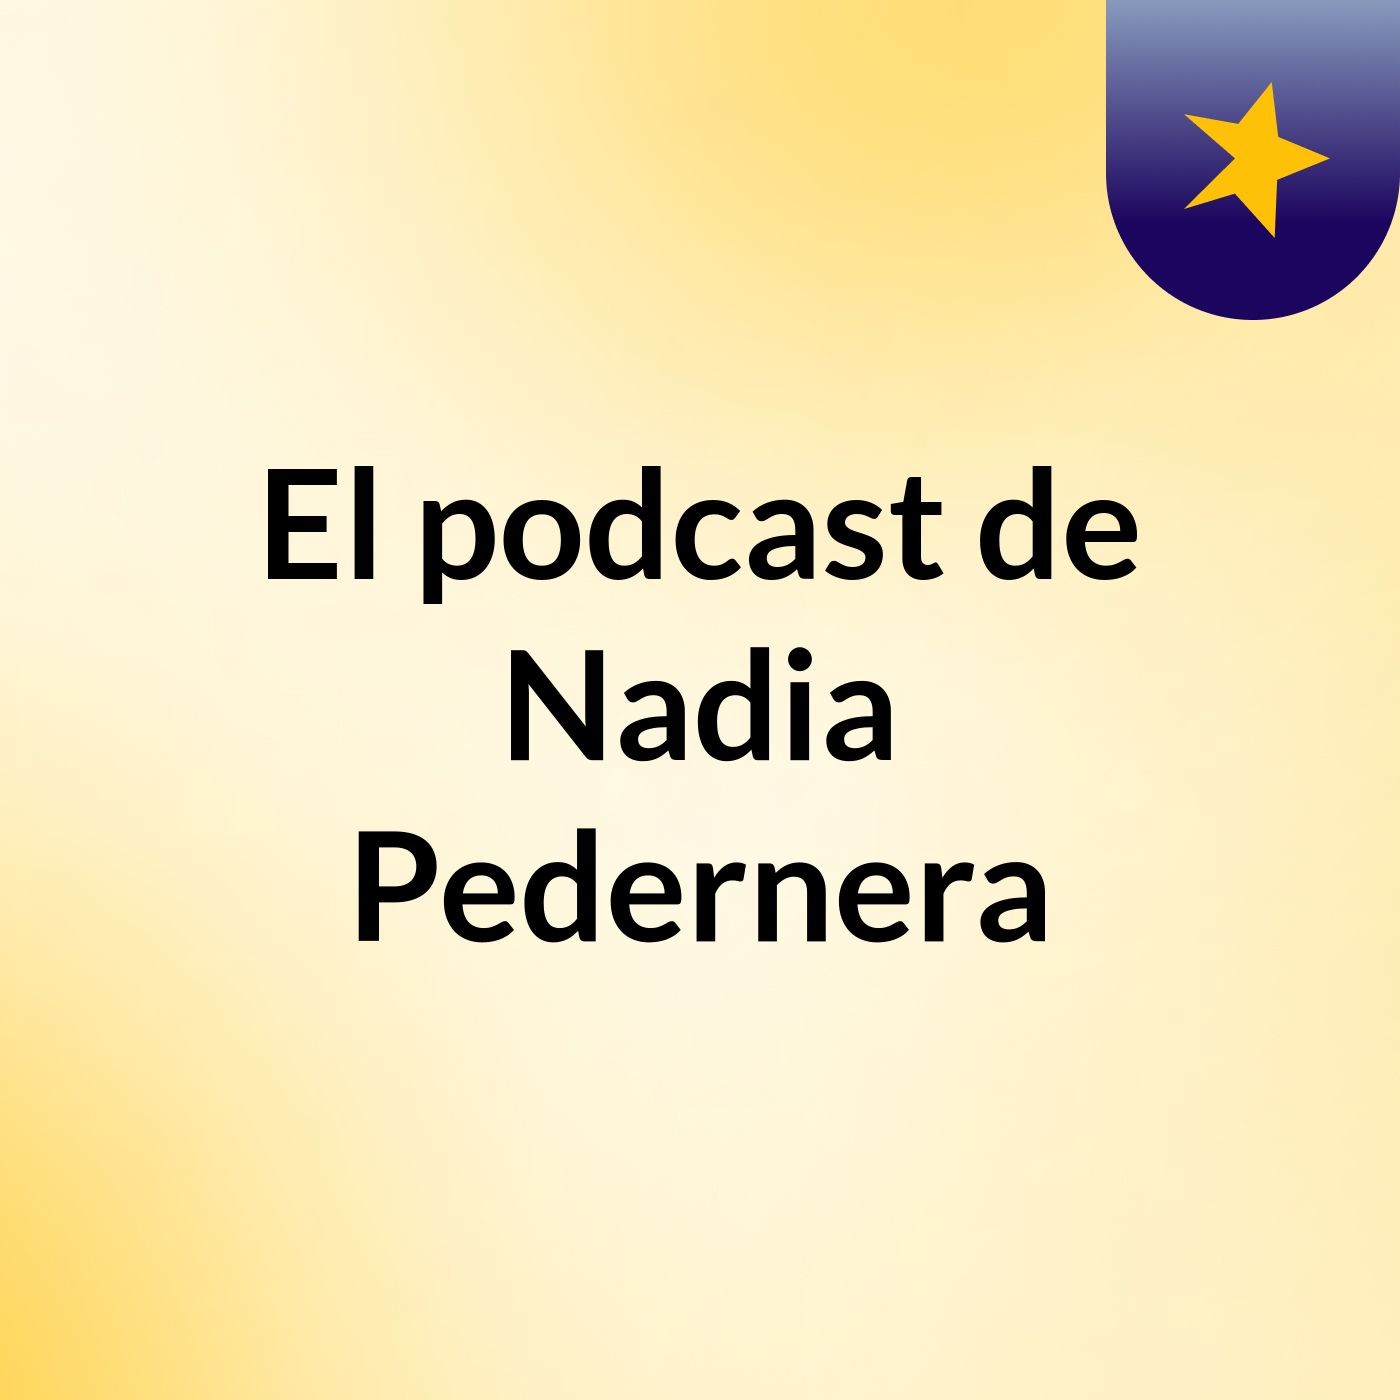 Episodio 10 - El podcast de Nadia Pedernera